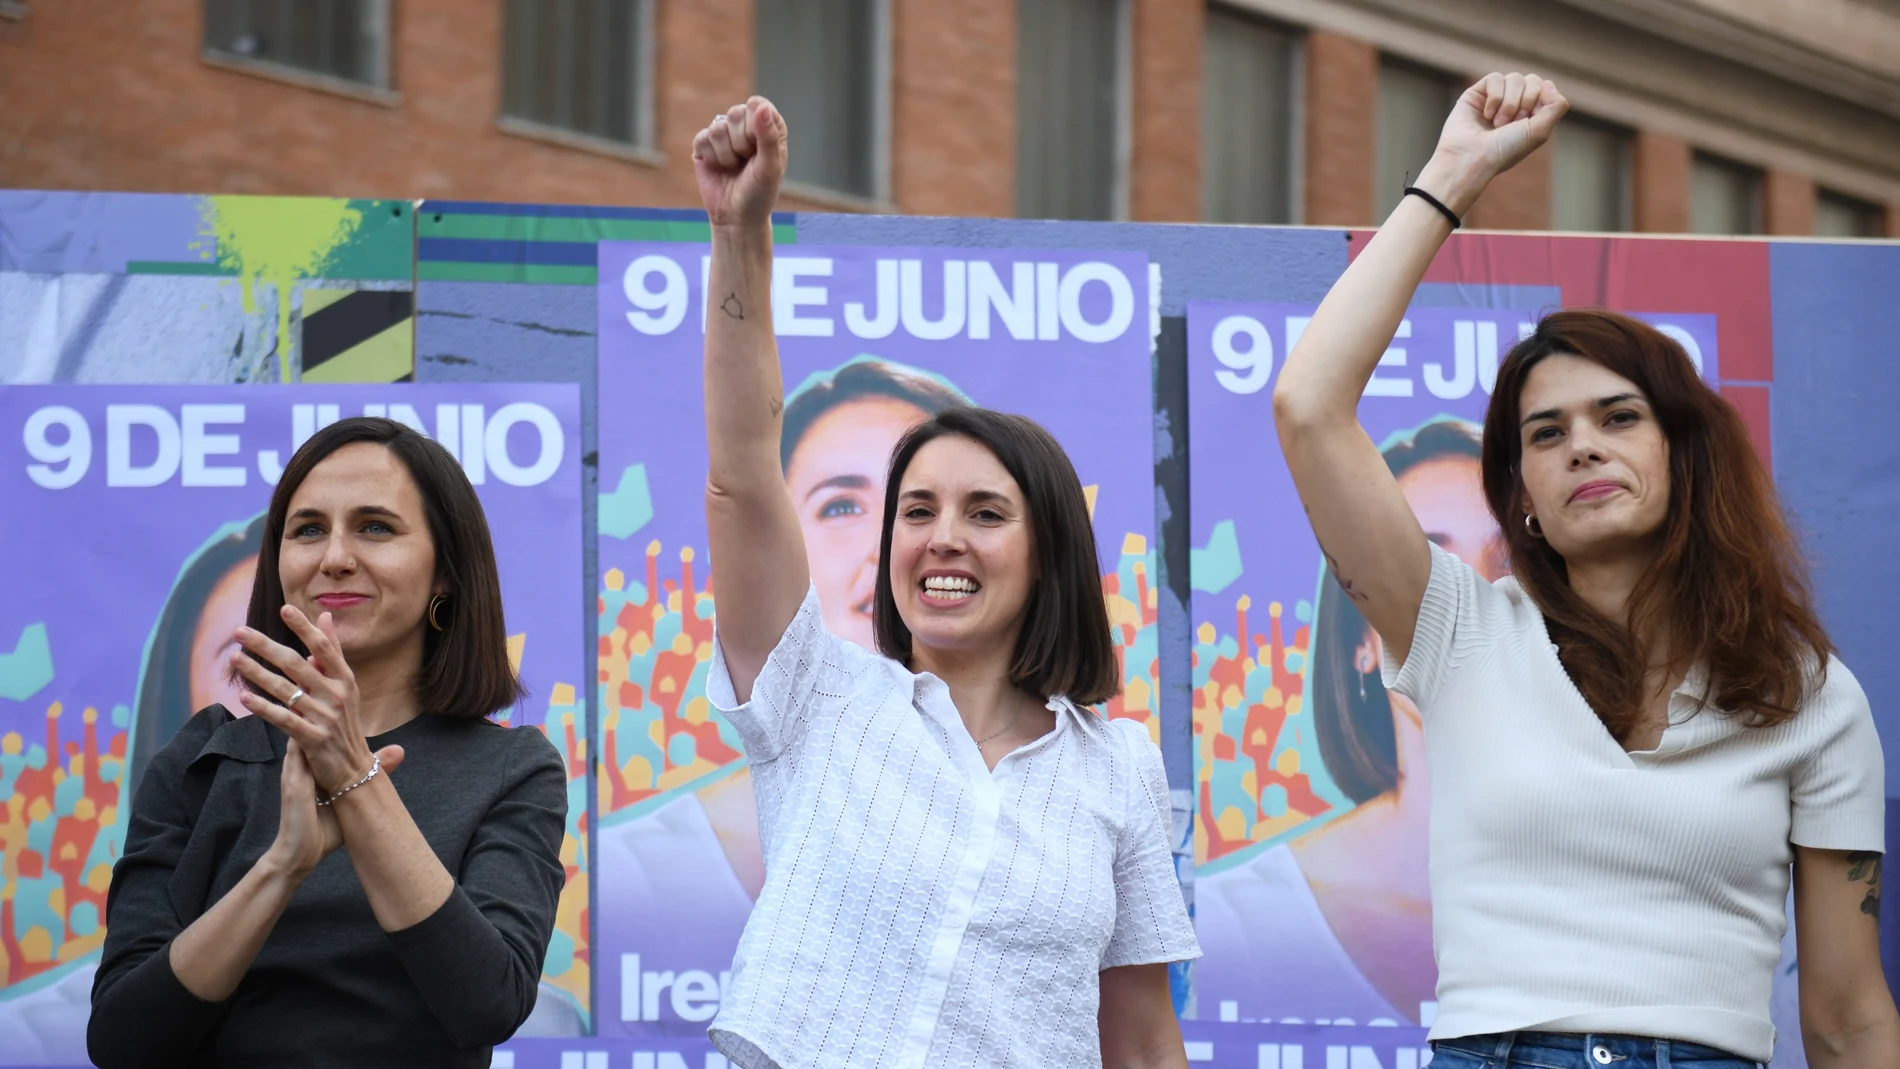 La secretaria general de Podemos, Ione Belarra; la candidata a las elecciones europeas, Irene Montero, y la portavoz, Isa Serra